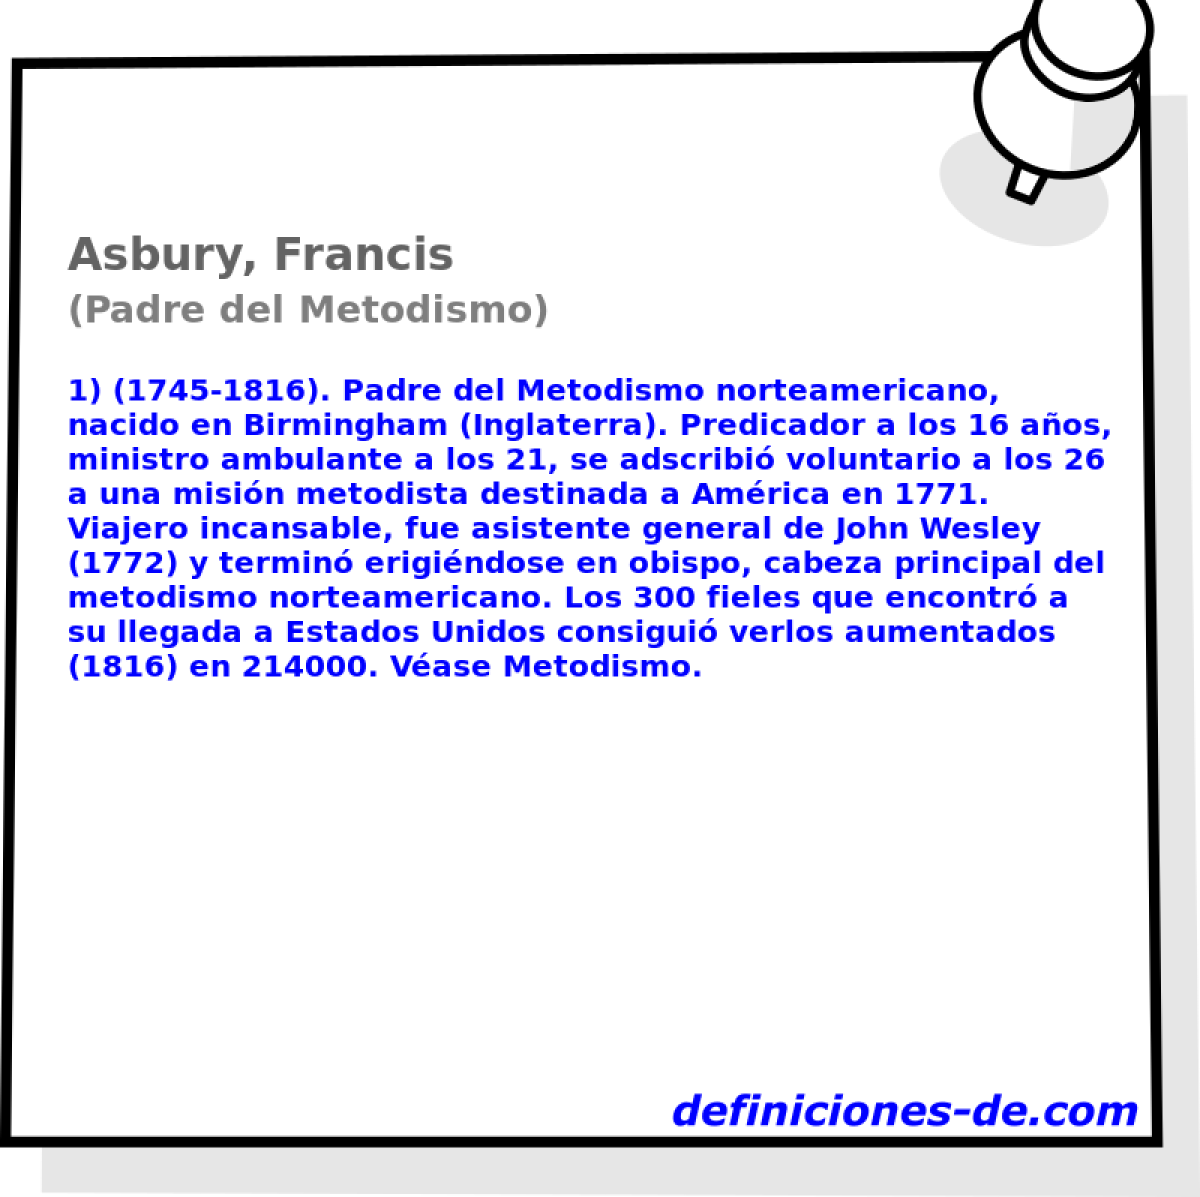 Asbury, Francis (Padre del Metodismo)